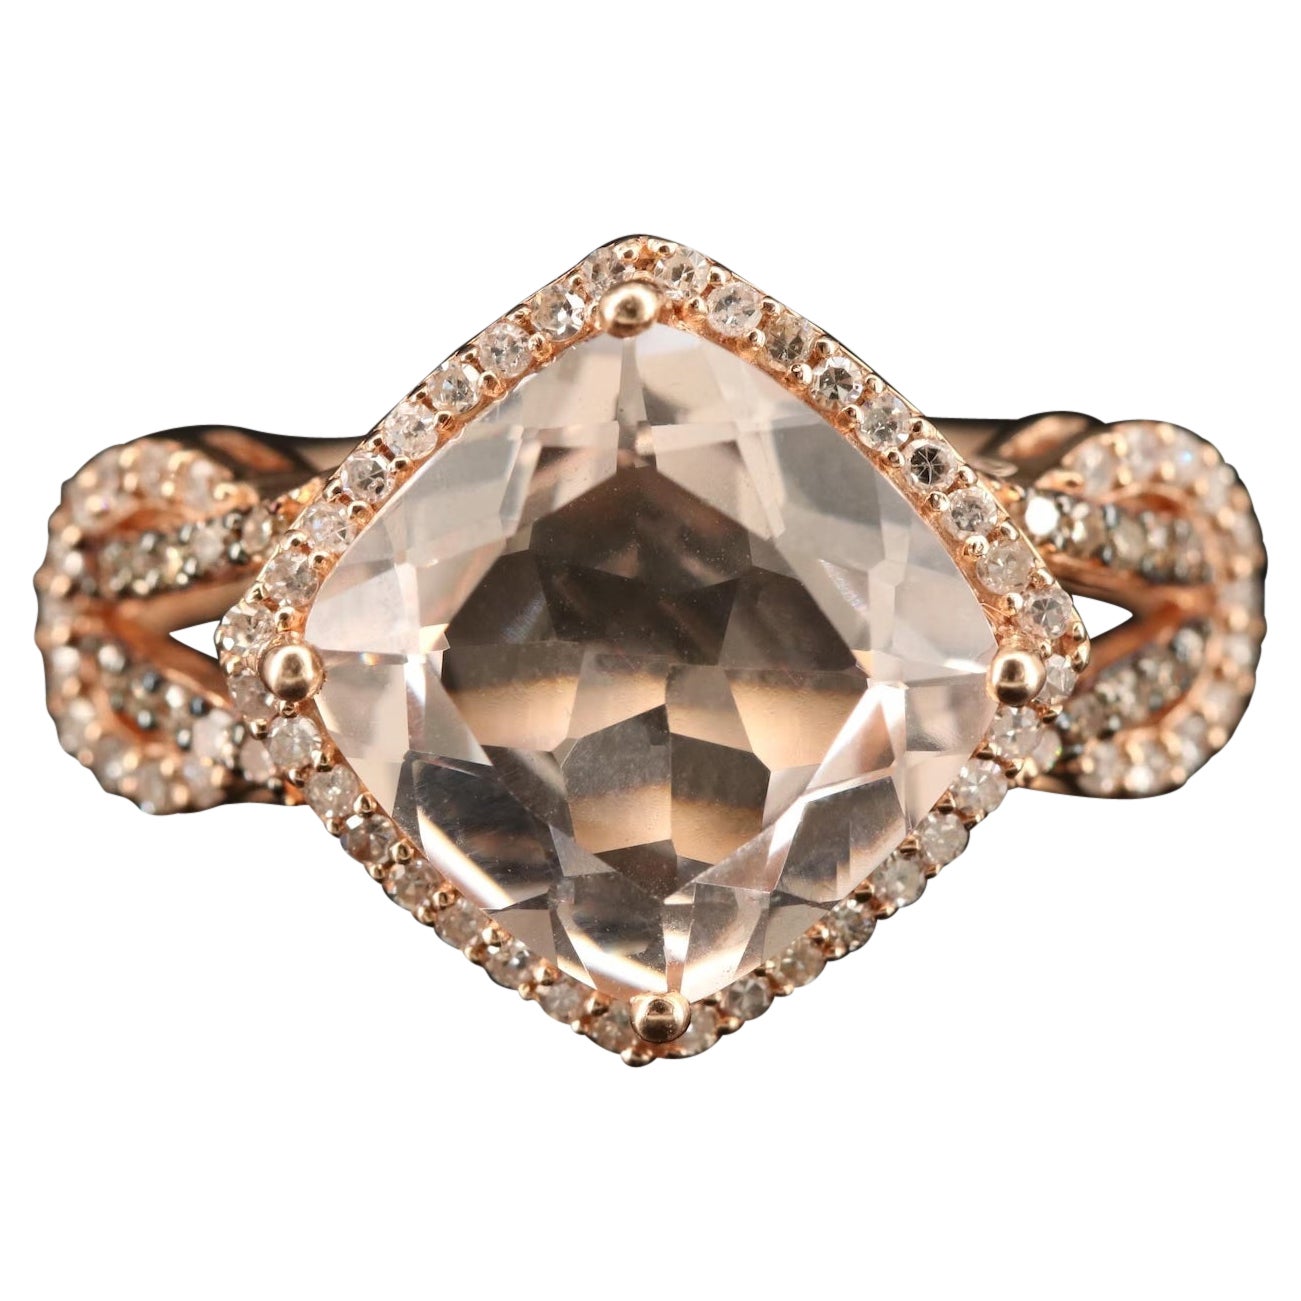 $4950 / Effy Blush 14K Rose Gold Morganite and Diamond Ring, 3.65 TCW